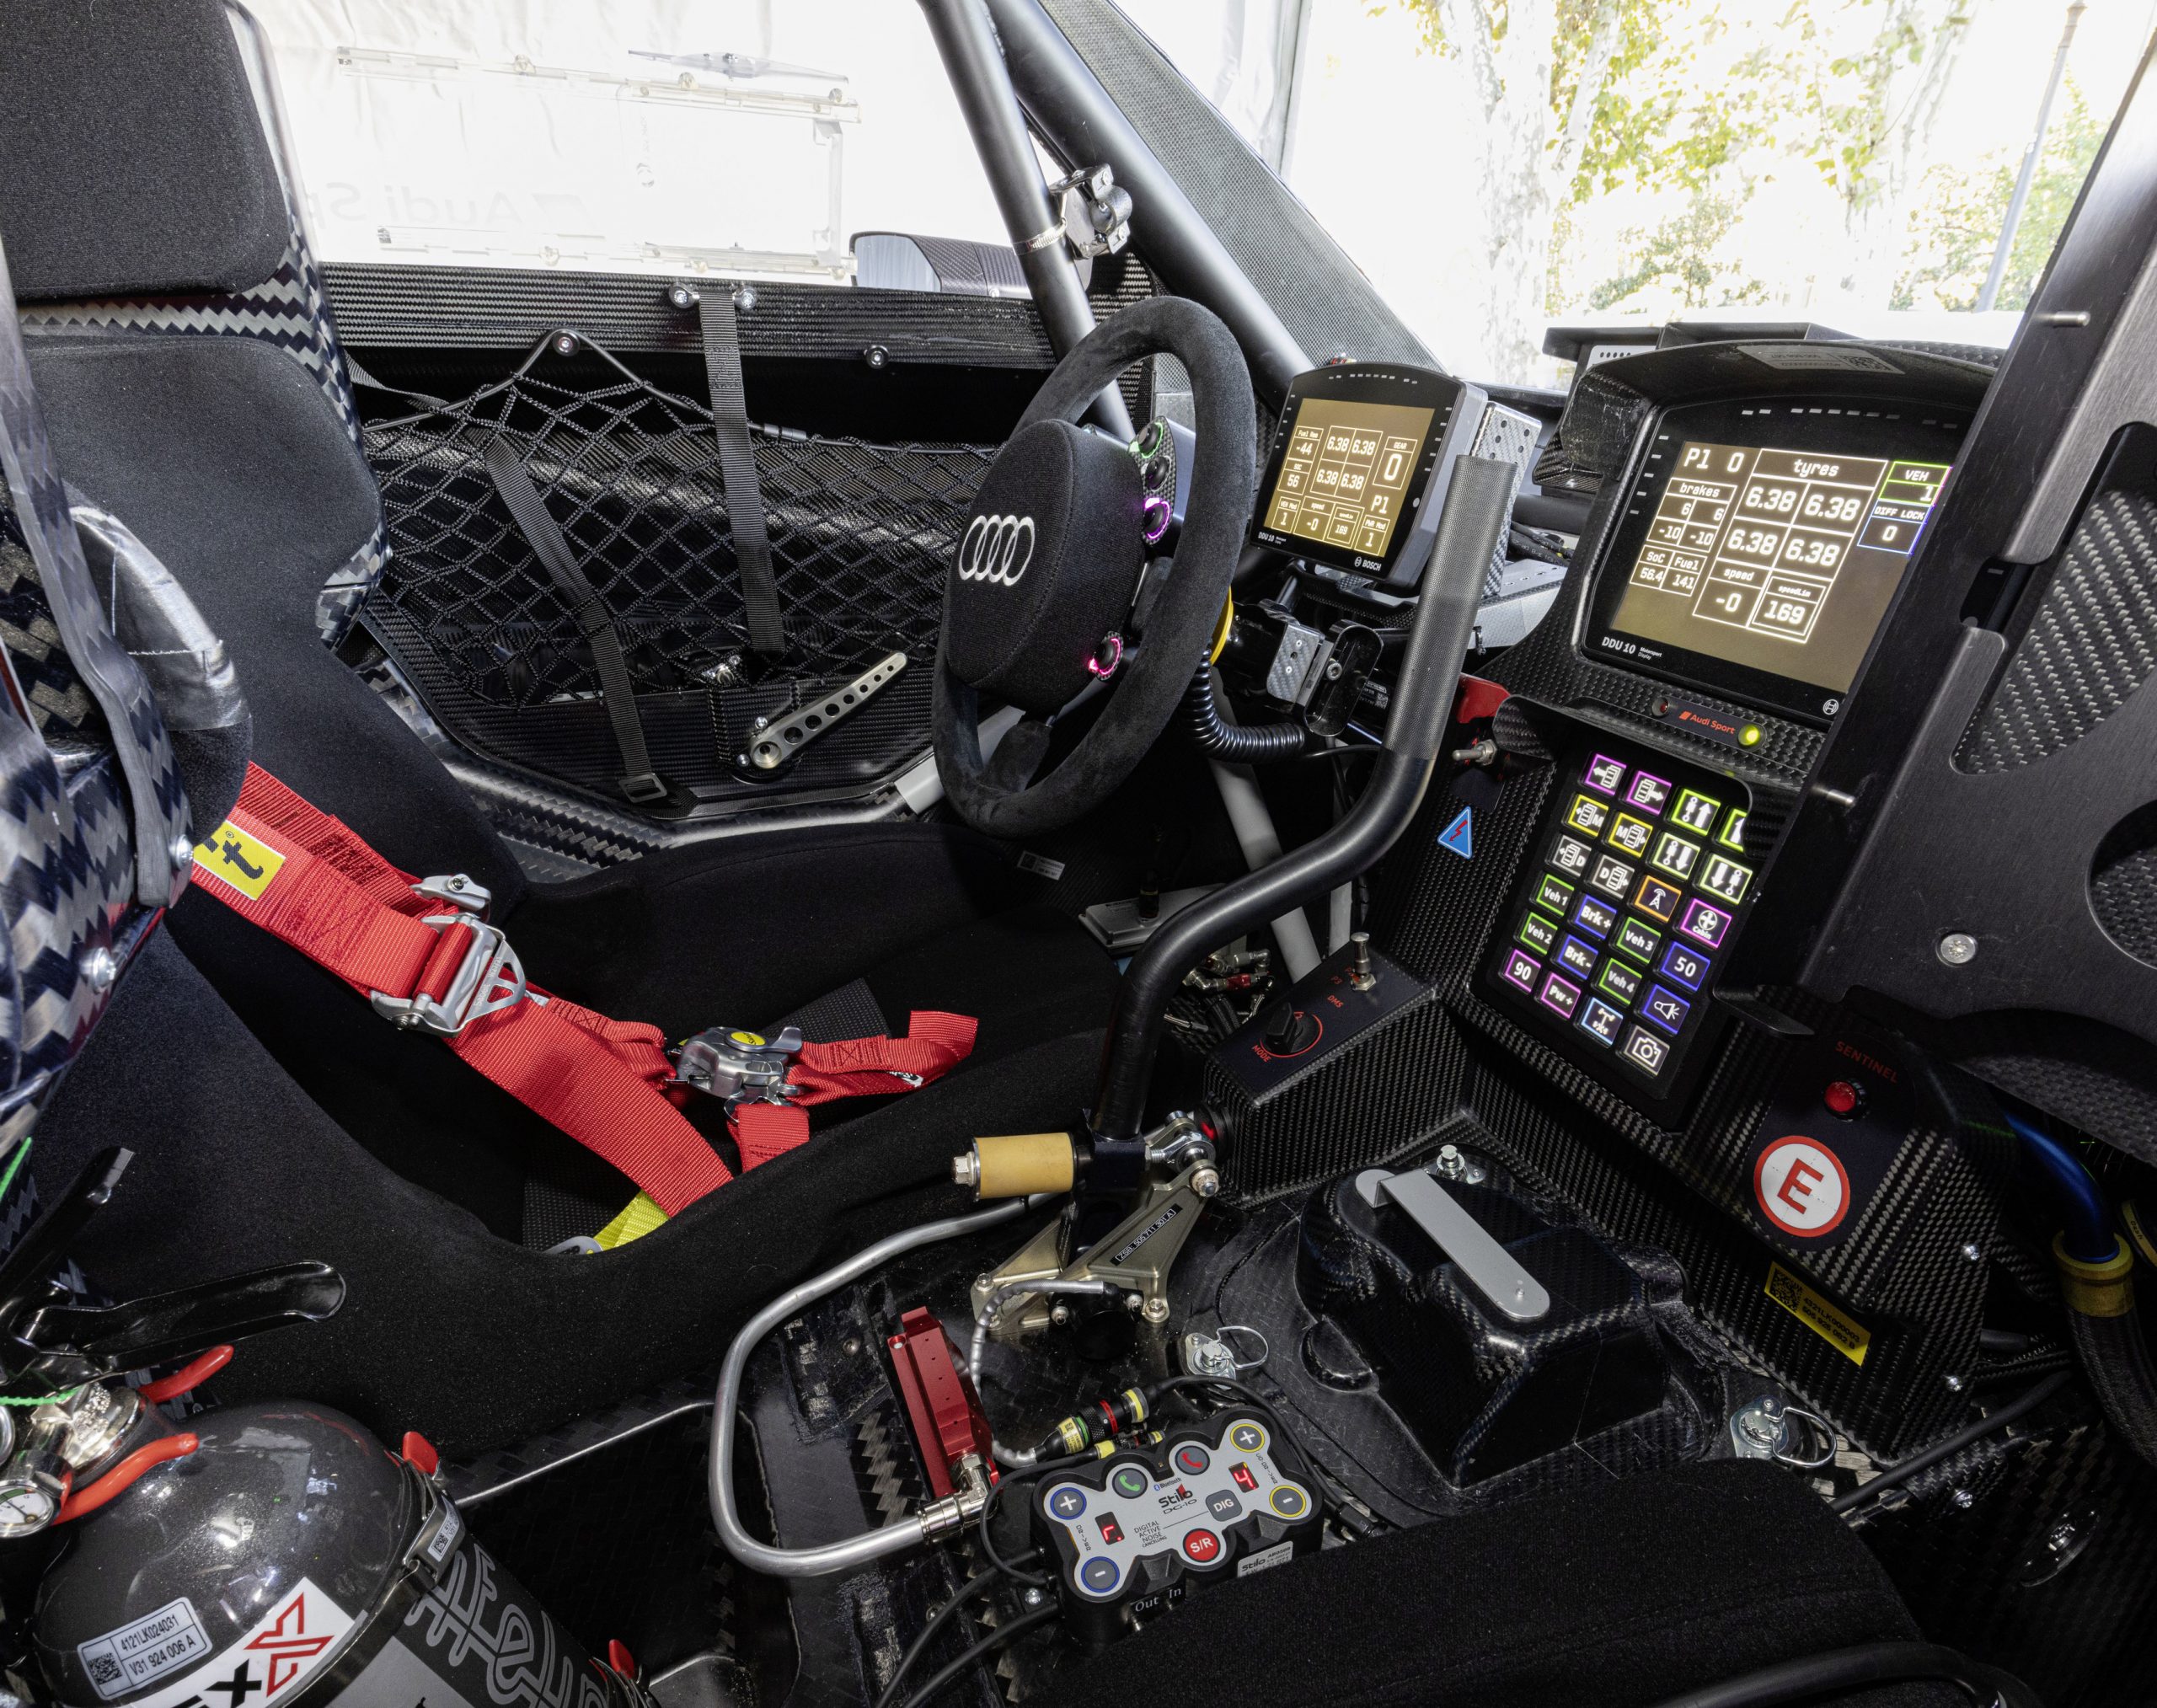 Audi RS Q e-tron, cockpit